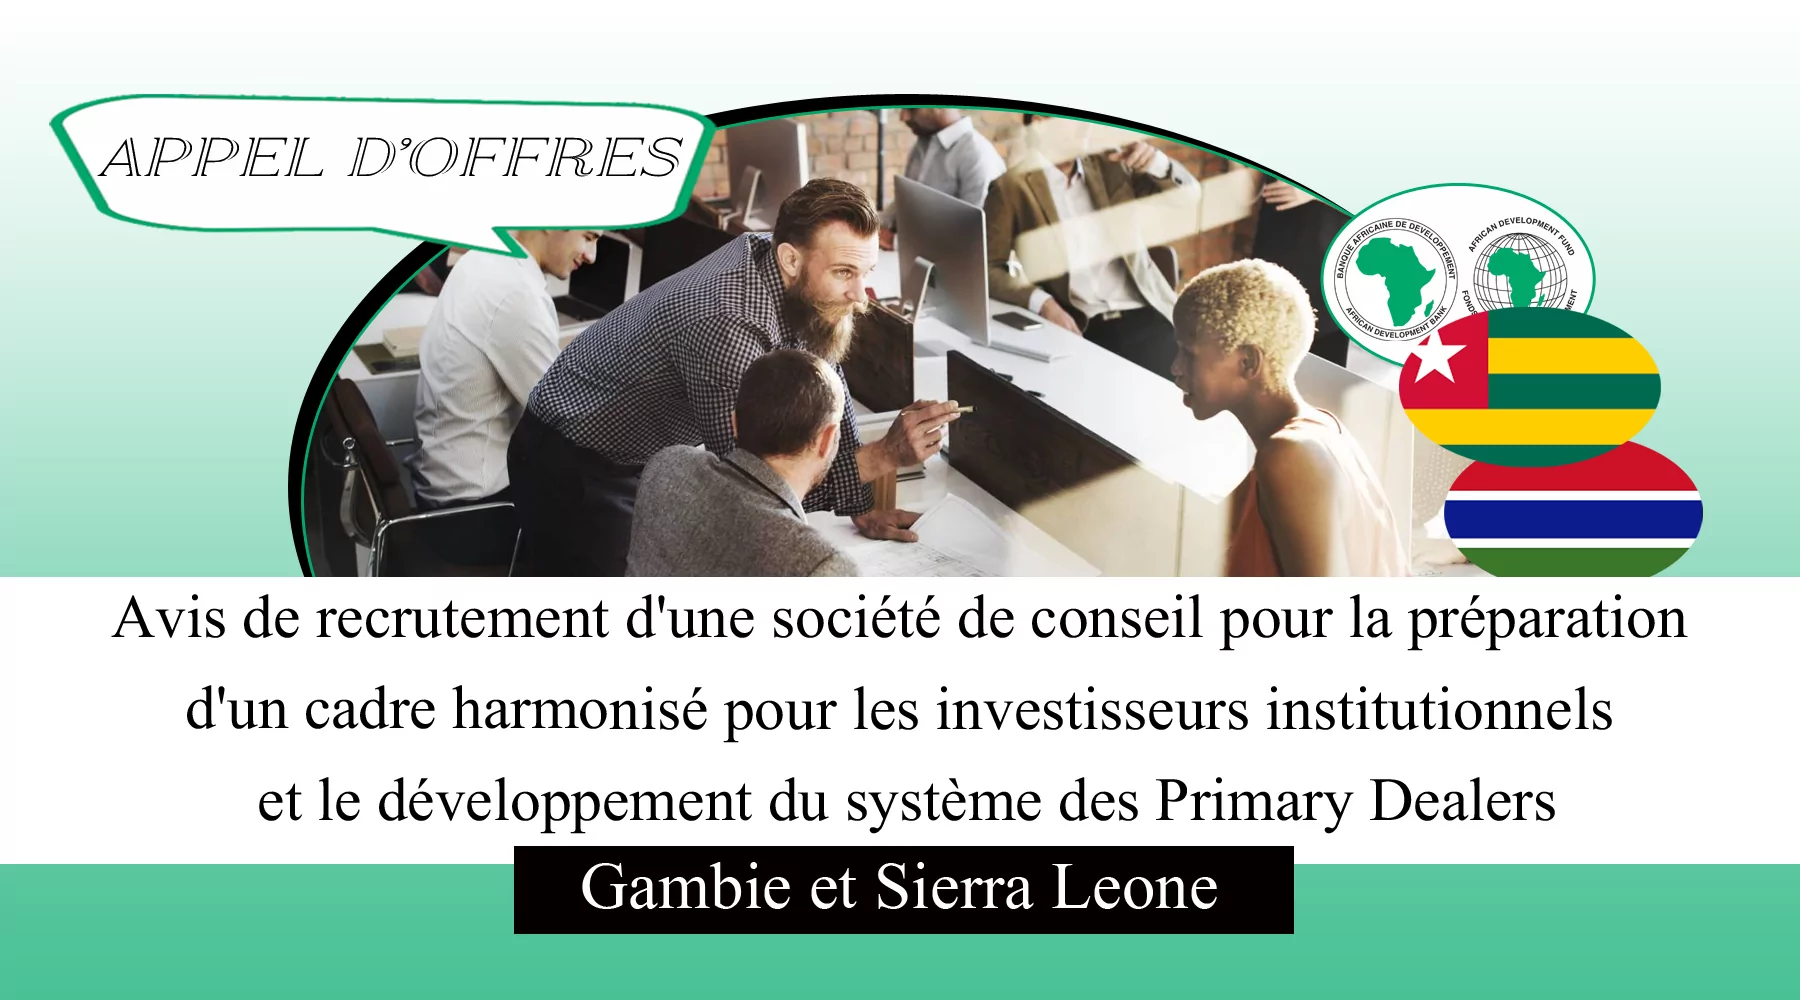 Avis de recrutement d’une société de conseil pour la préparation d’un cadre harmonisé pour les investisseurs institutionnels et le développement du système des Primary Dealers, Gambia et Sierra Leone